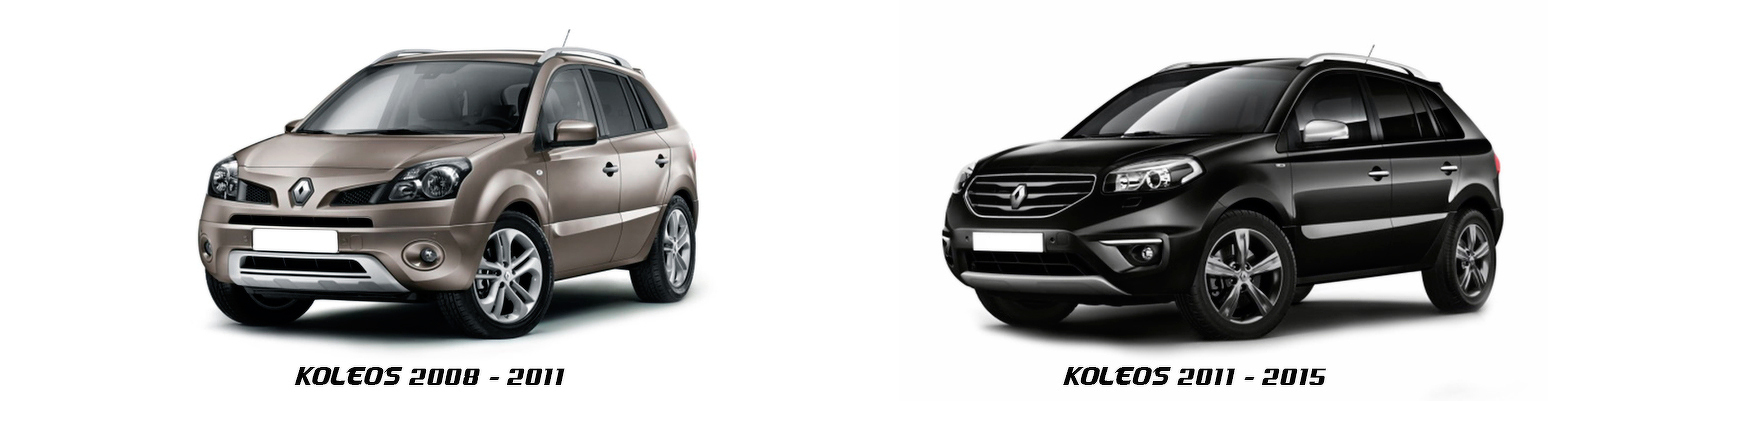 Piezas y Recambios de Renault Koleos (Y) de 2008 a 2011 | Veramauto.es